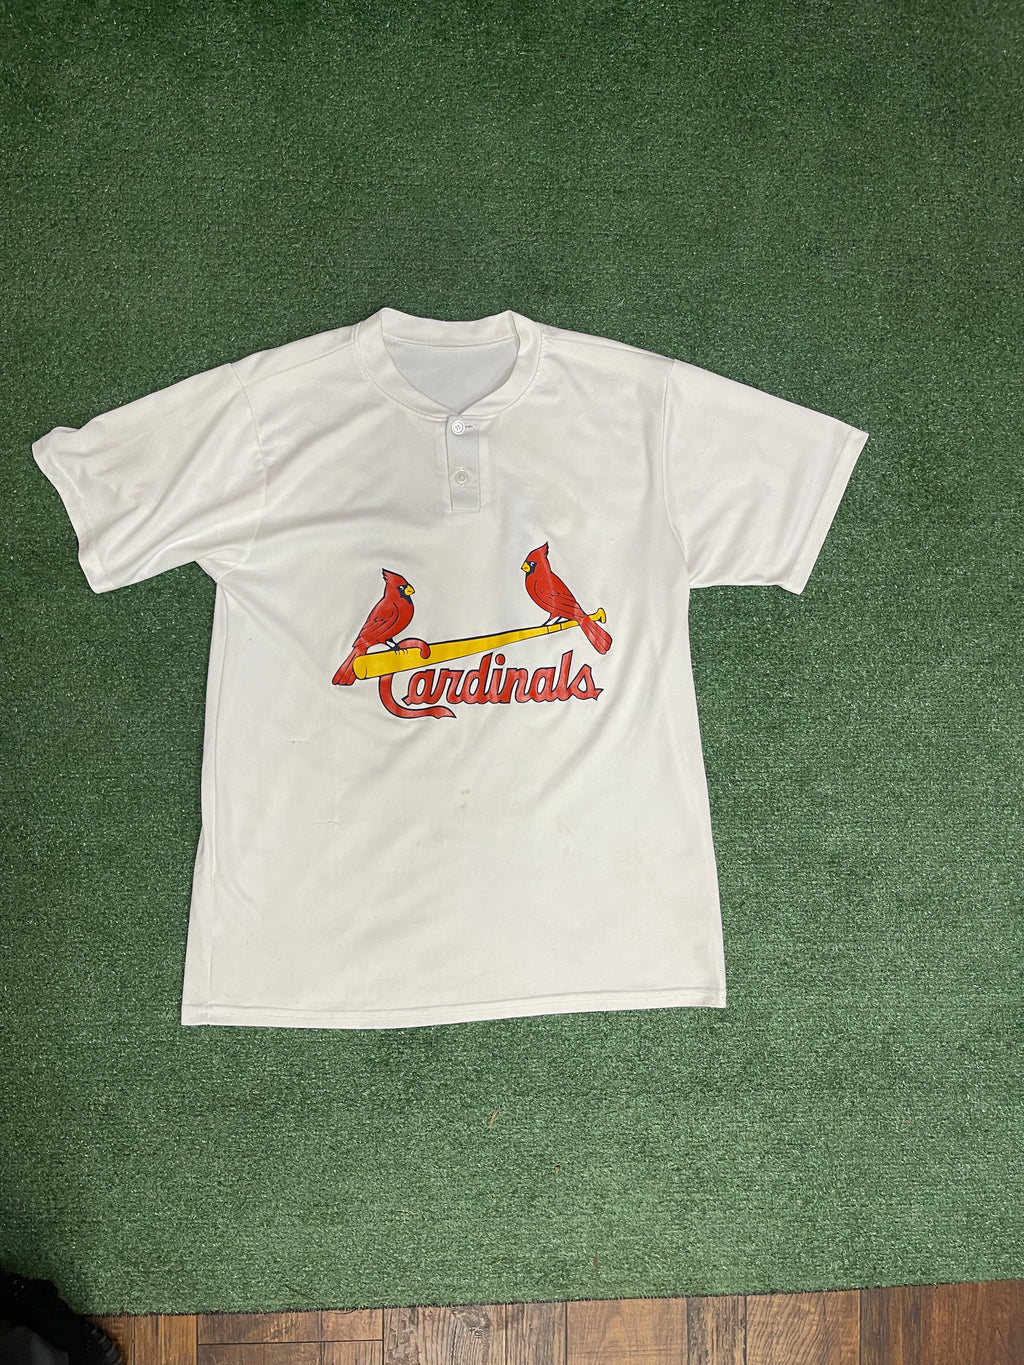 Majestic St. Louis Cardinals short sleeve t-shirt L black